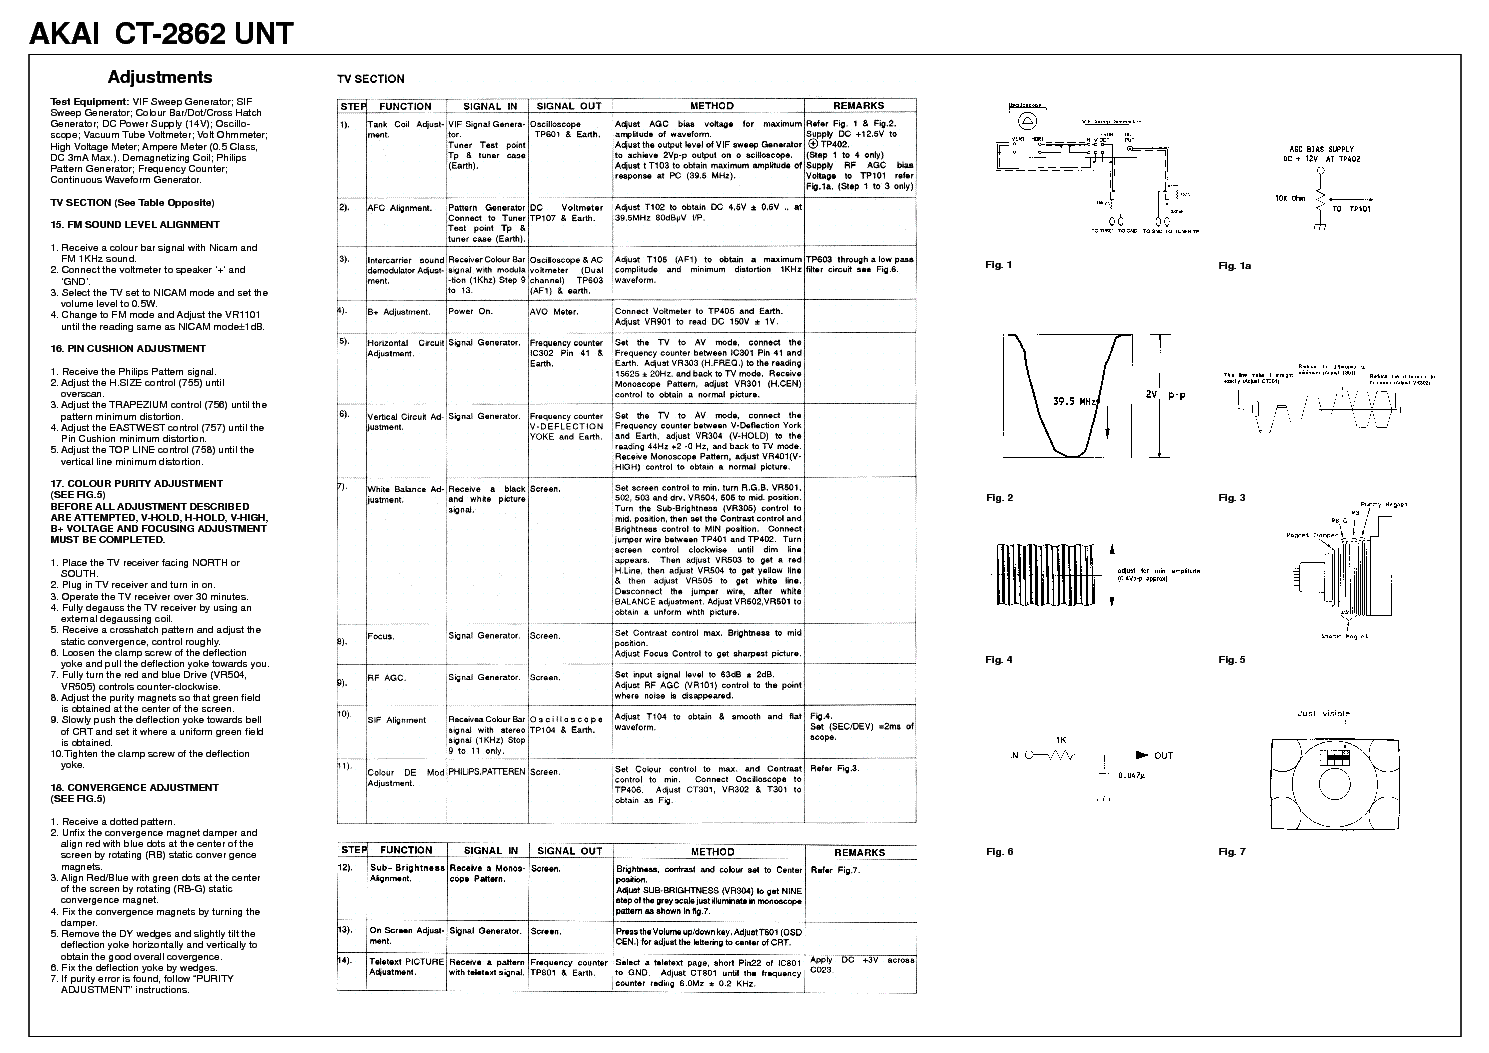 AKAI CT2872 service manual (1st page)